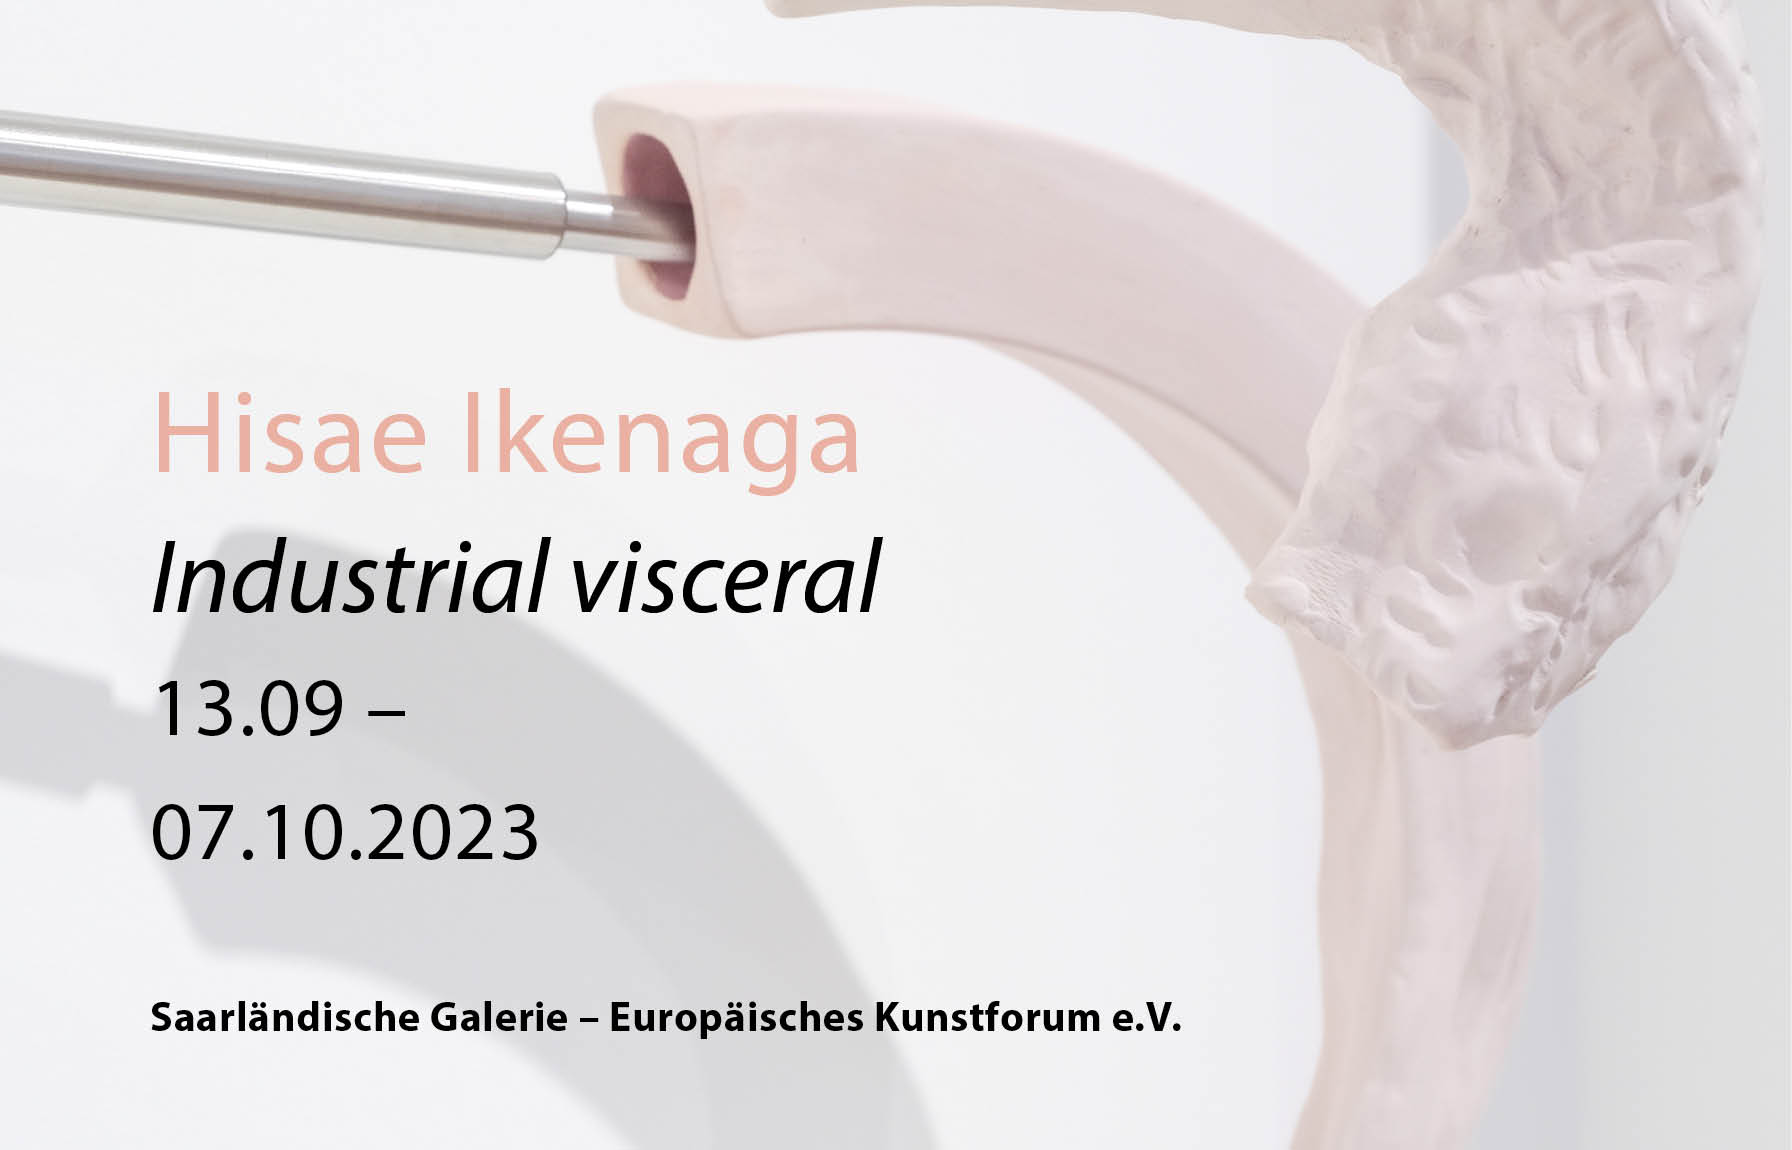 Le travail d’Hisae Ikenaga montré pour la première fois à Berlin